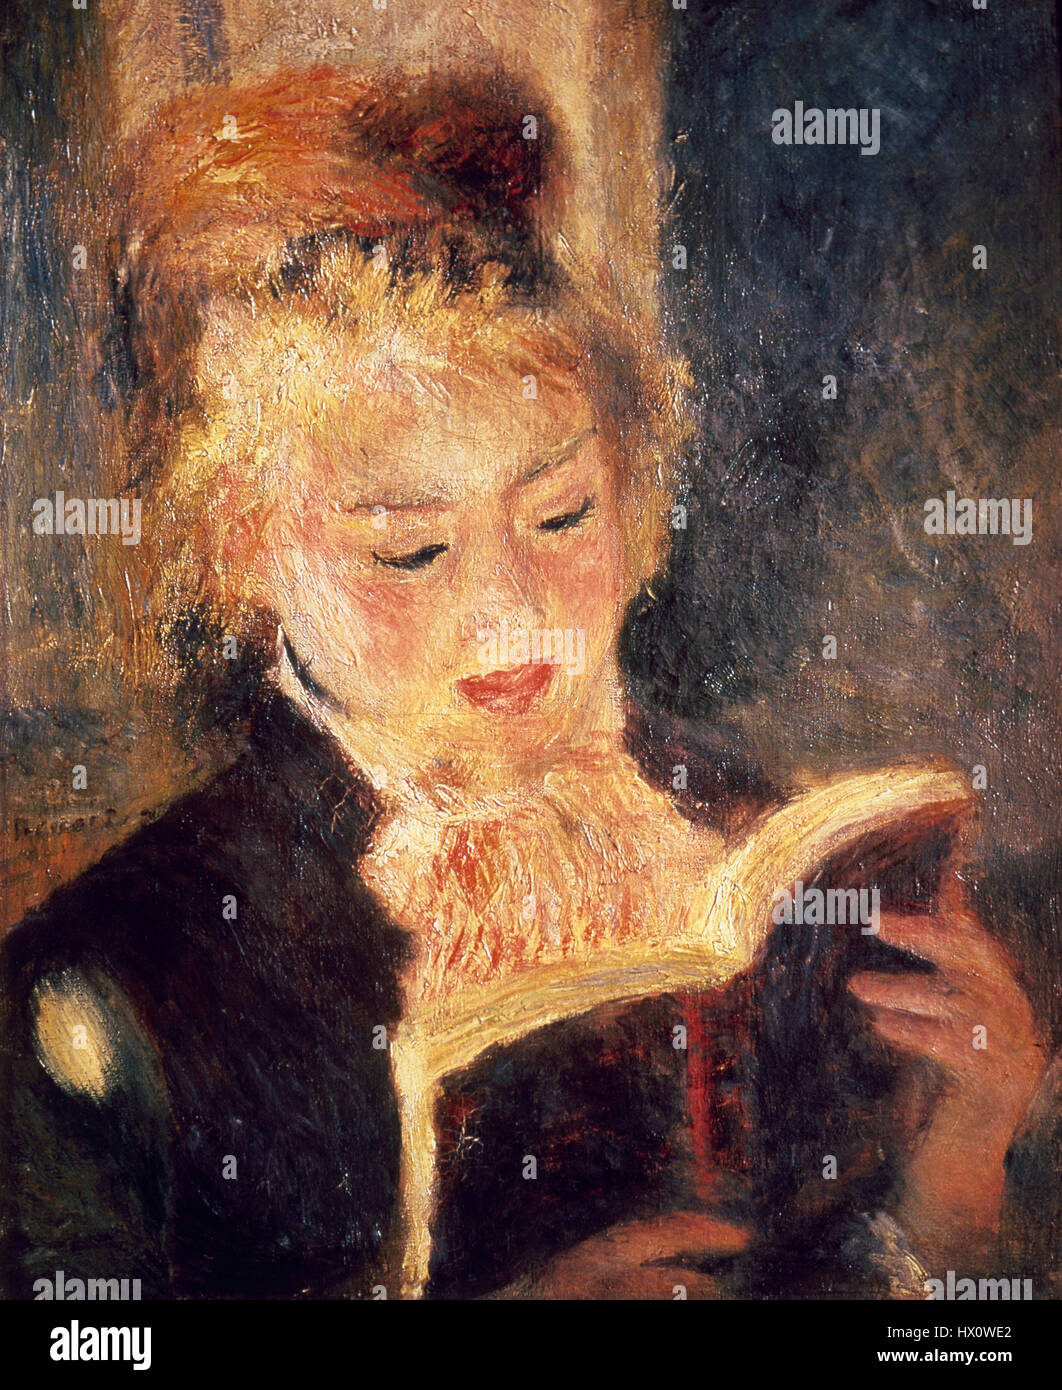 Auguste Renoir (1841-1919). L'artiste française. Le lecteur, 1874. Huile sur toile. Musée d'Orsay. Paris. La France. Banque D'Images